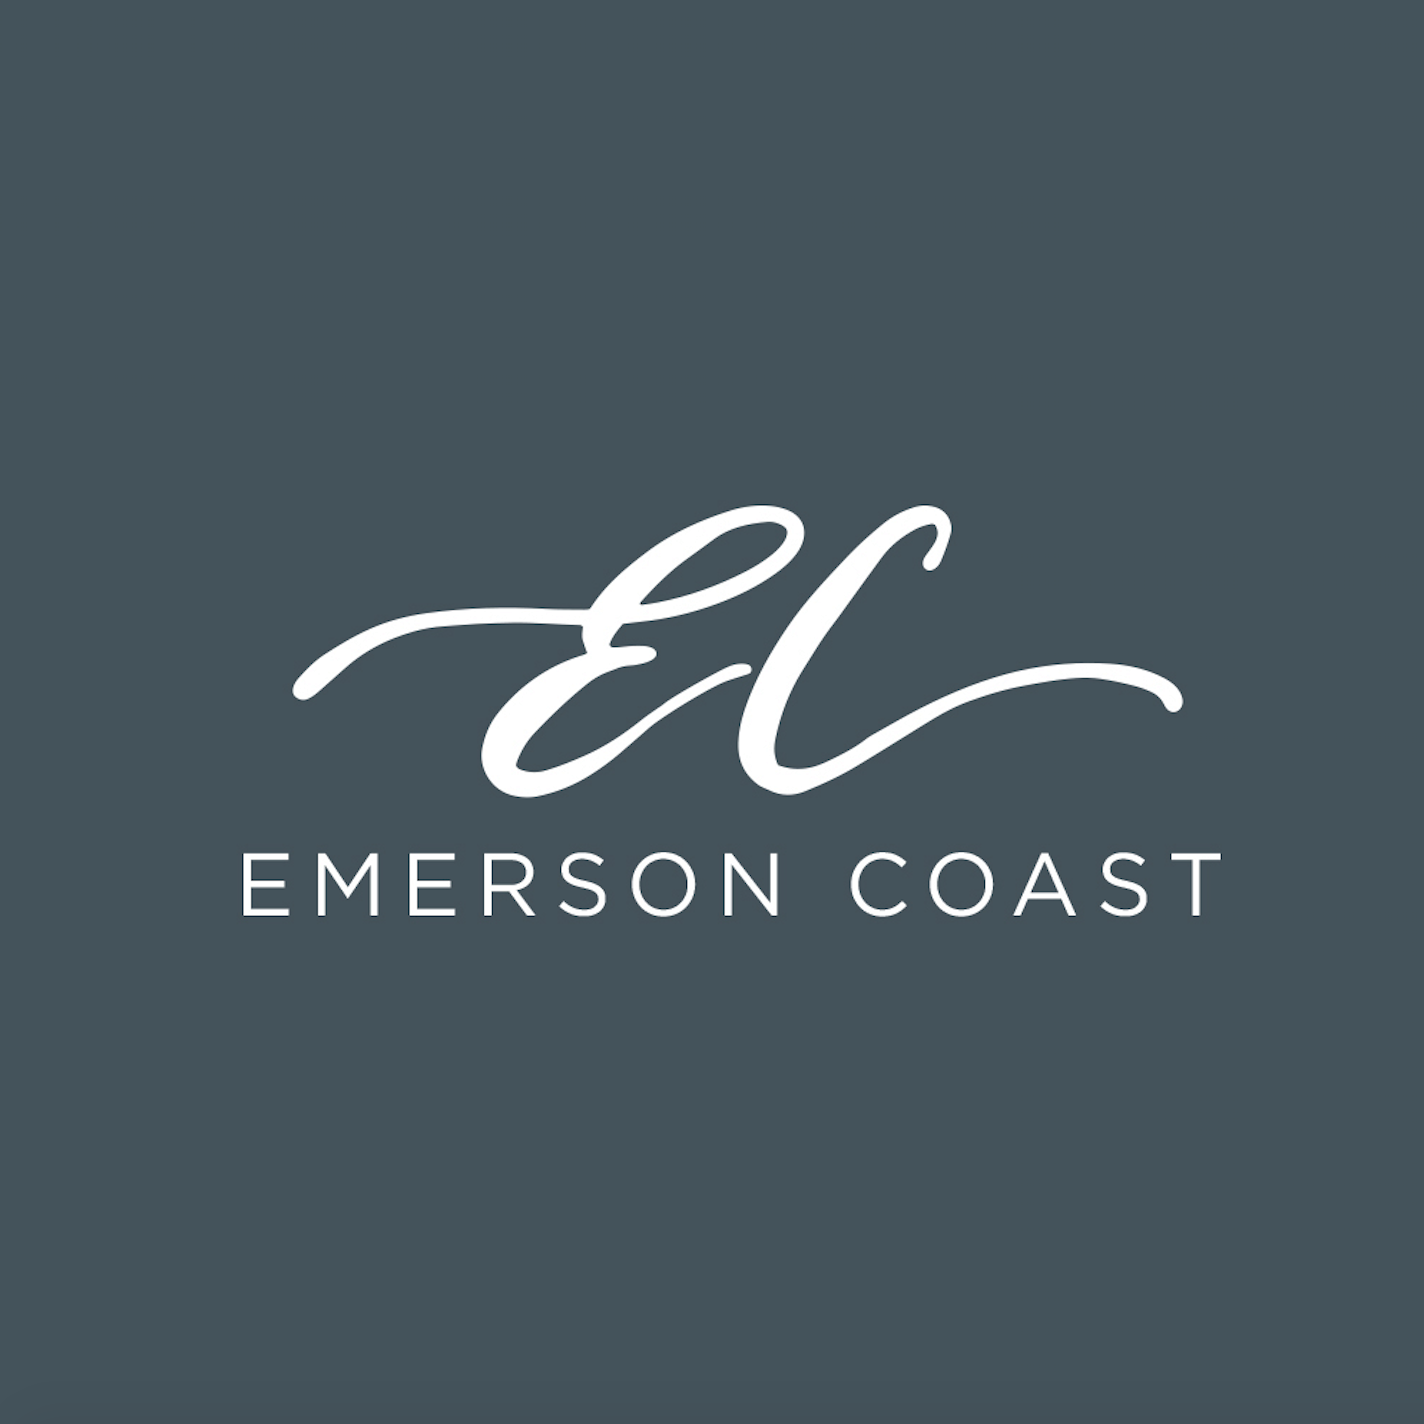 Emerson Coast